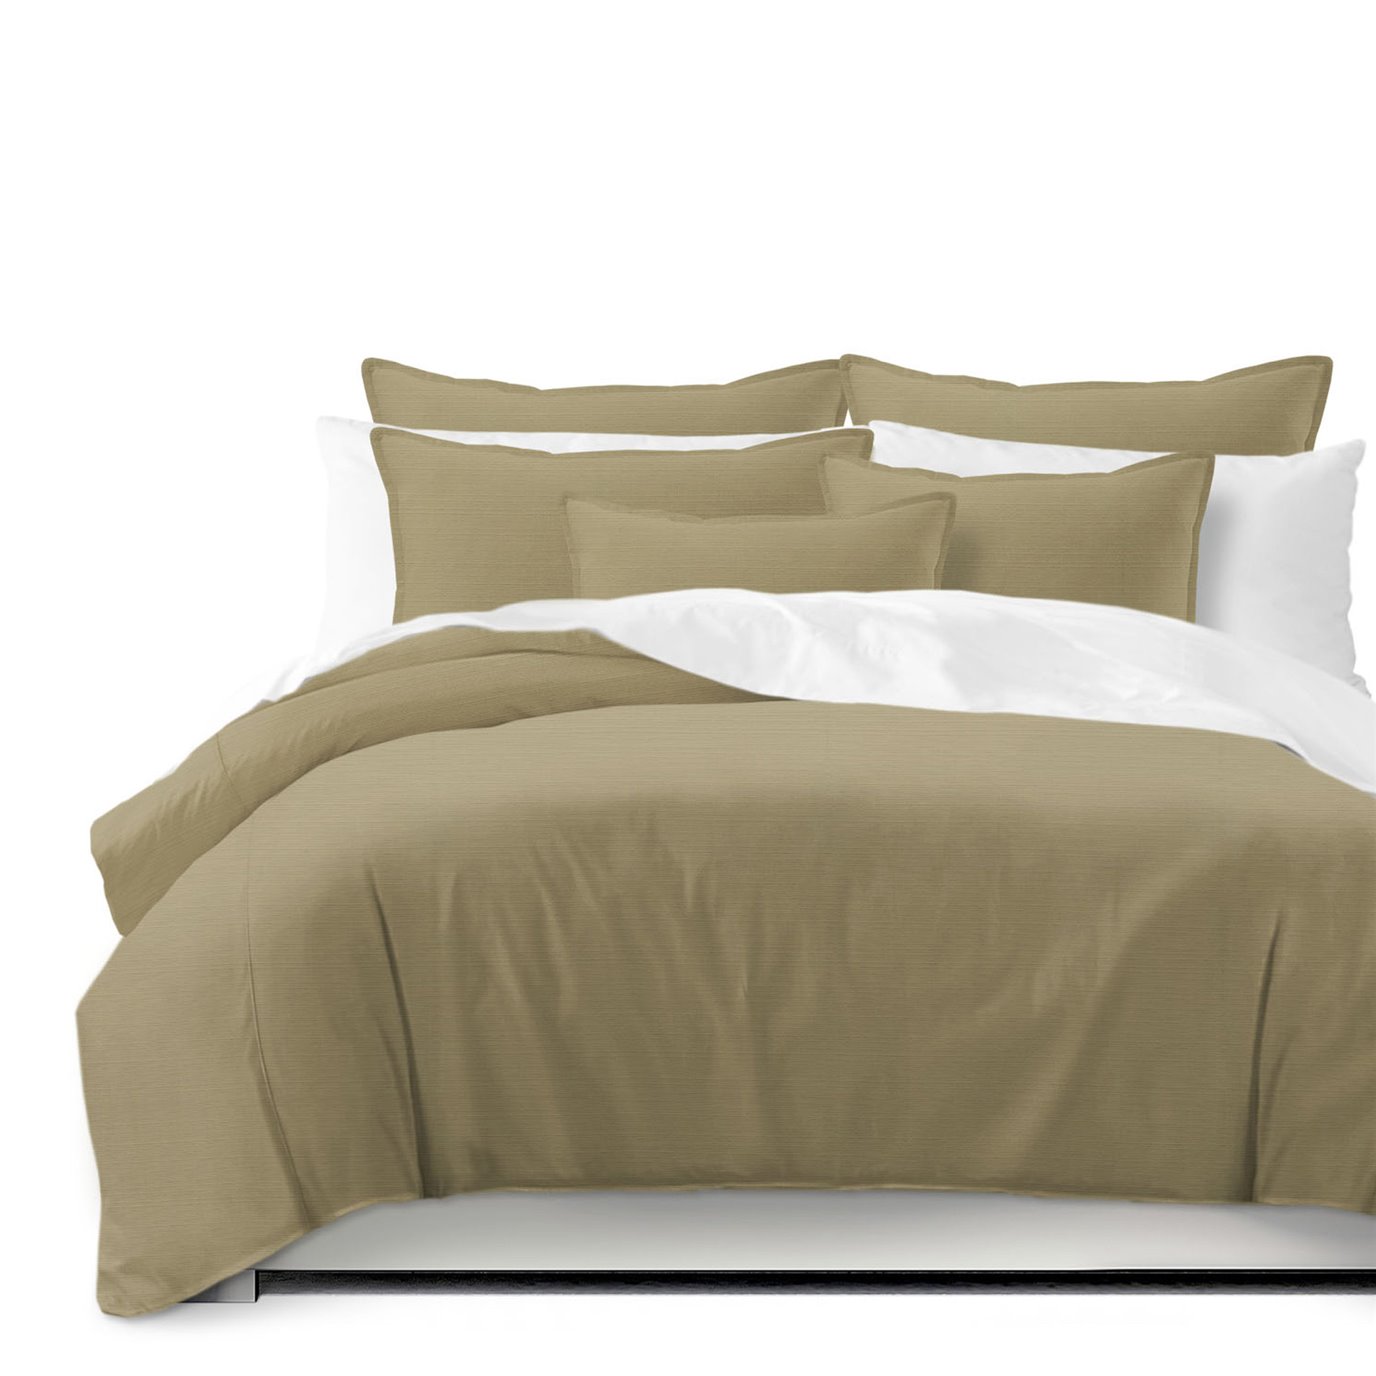 Nova Gold Comforter and Pillow Sham(s) Set - Size Queen